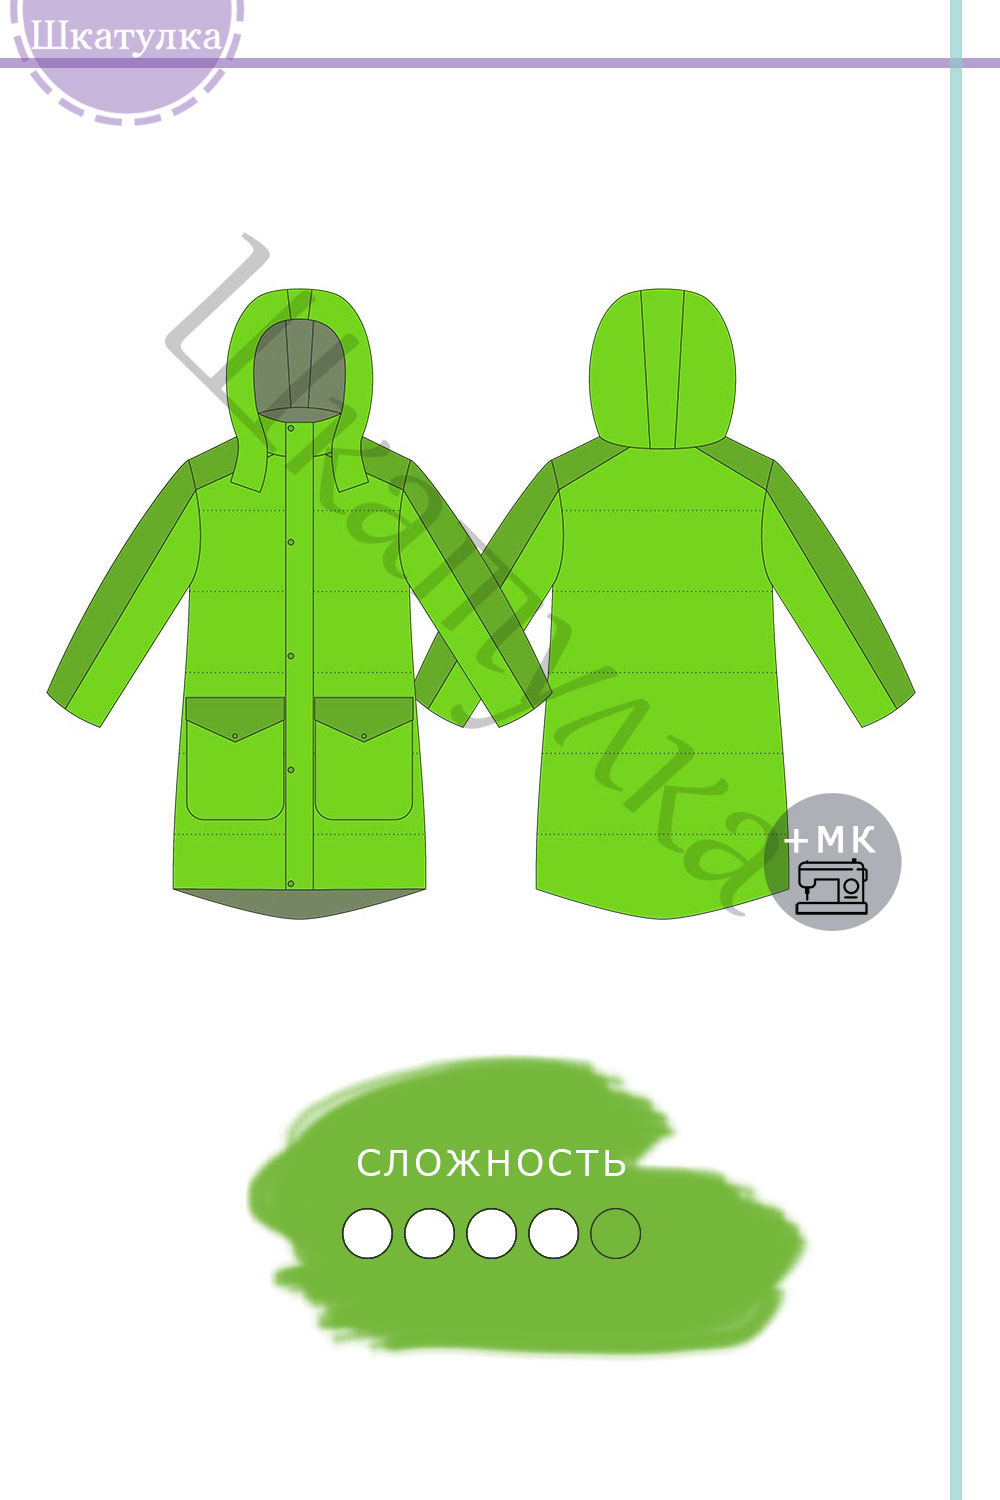 Выкройки детской одежды от Vikisews — купить онлайн и скачать pdf, размерный ряд 